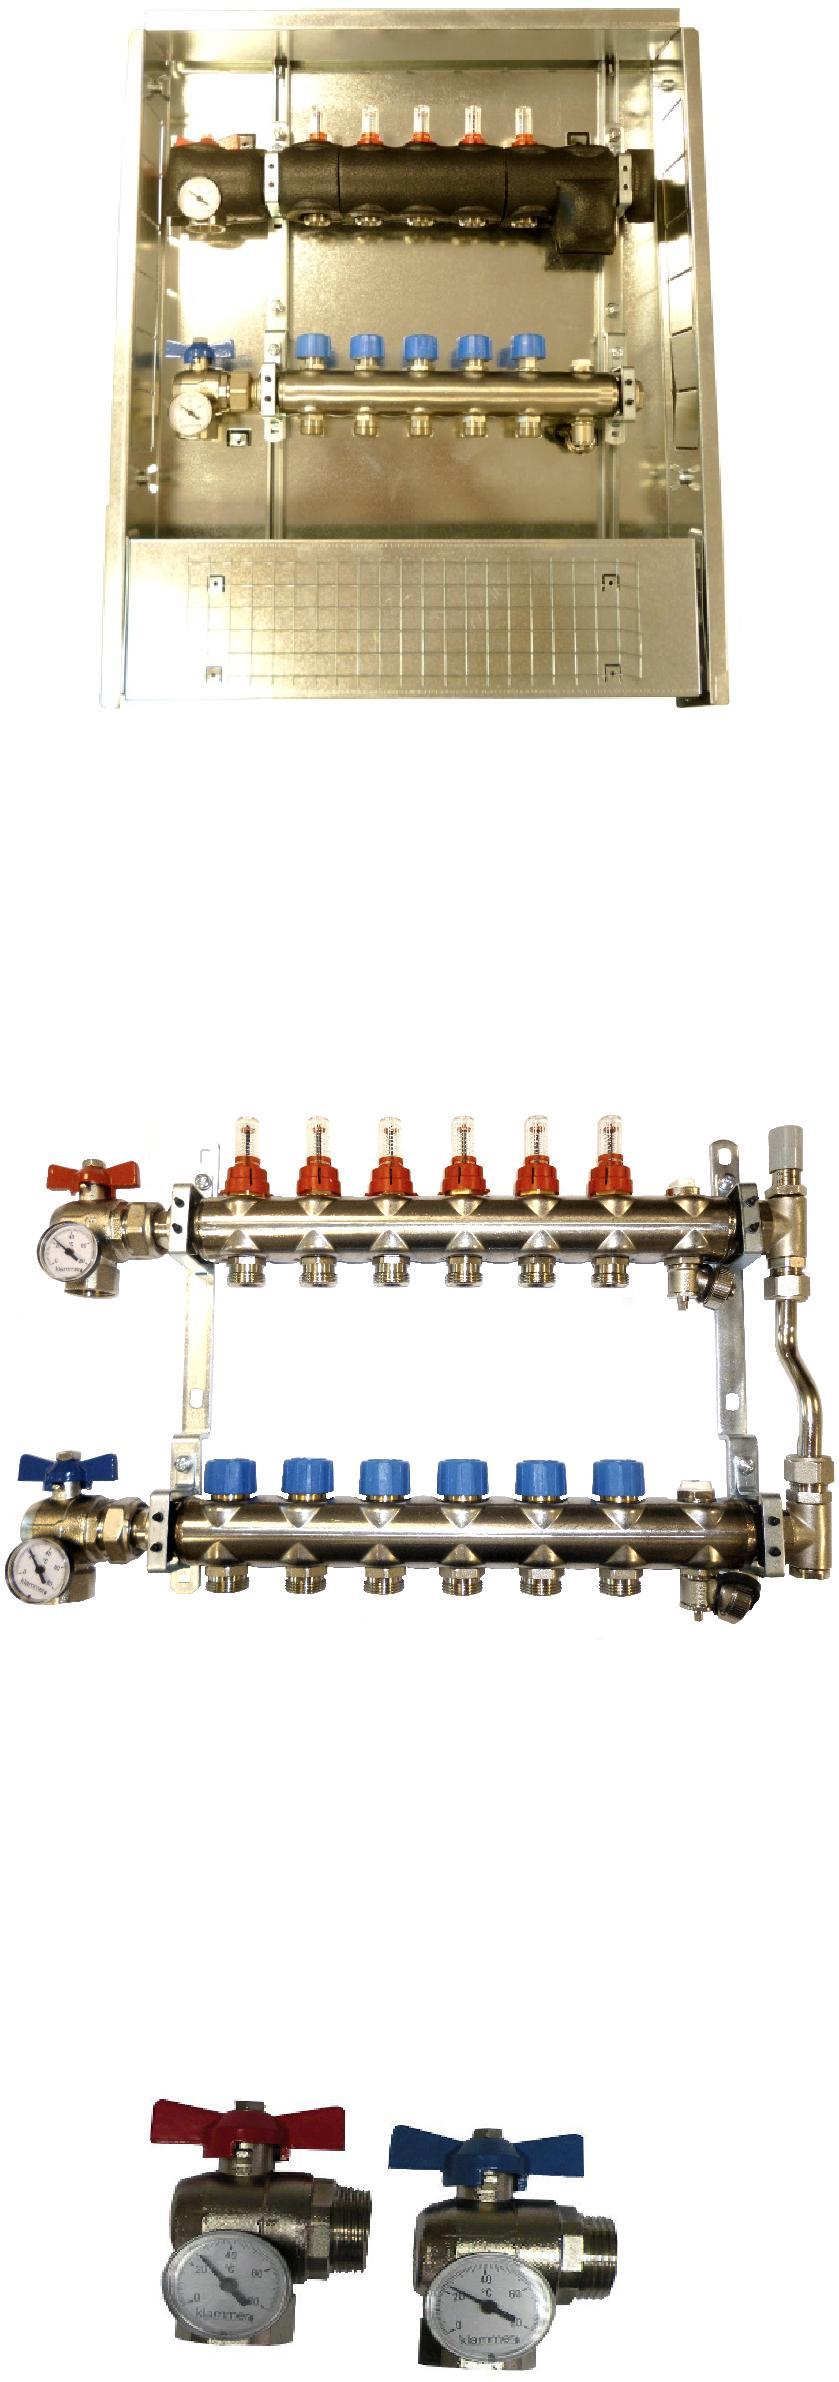 45 ACCESSORI GUSCI ISOLANTI KIT ISO I collettori di distribuzione della serie INOX possono essere utilizzati anche negli impianti con raffrescamento radiante o impianti con acqua refrigerata